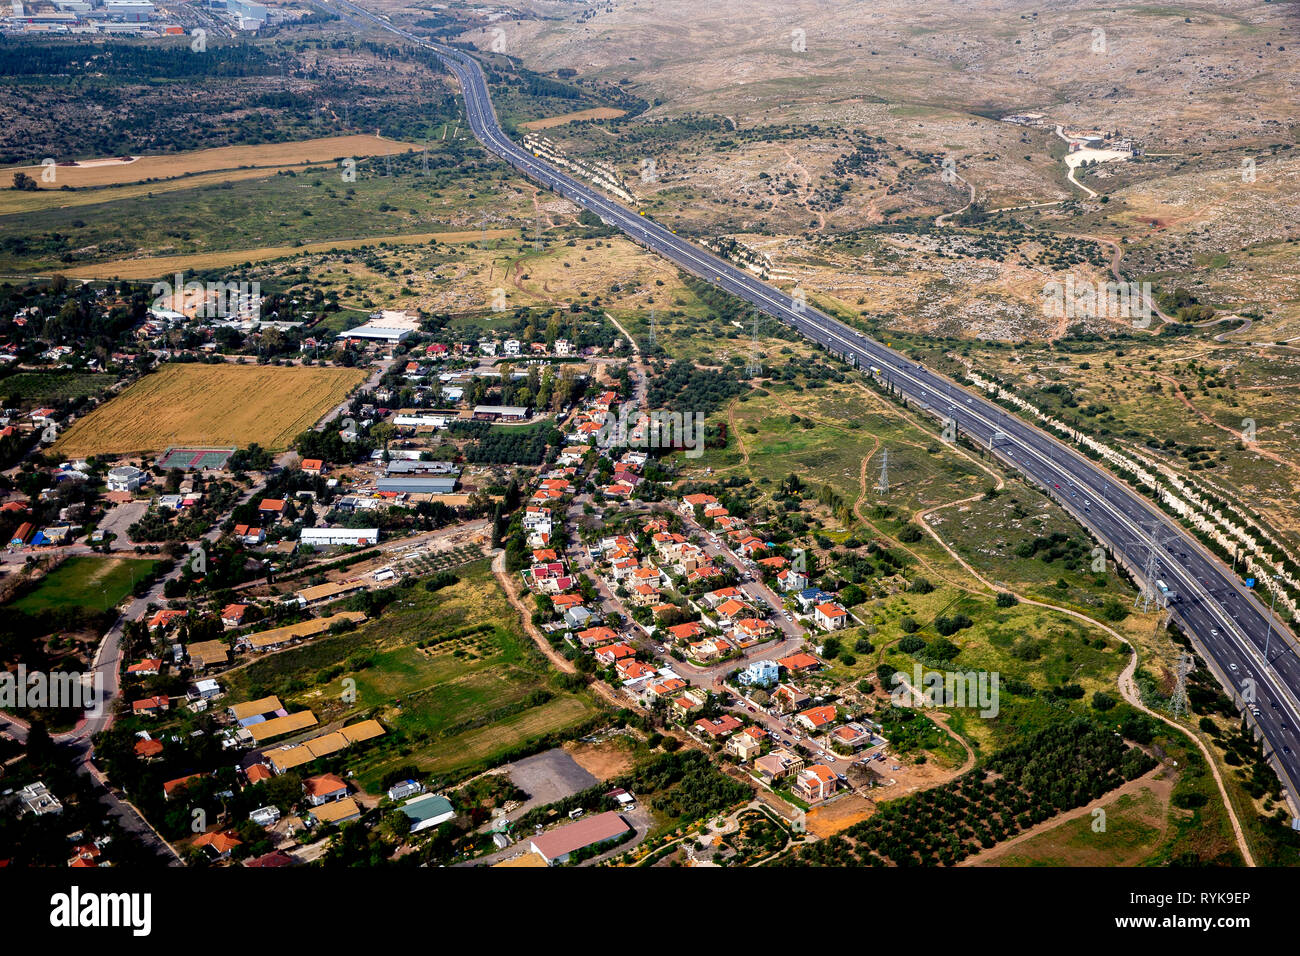 Vista aerea della zona costiera vicino a Tel Aviv, Israele. Foto Stock